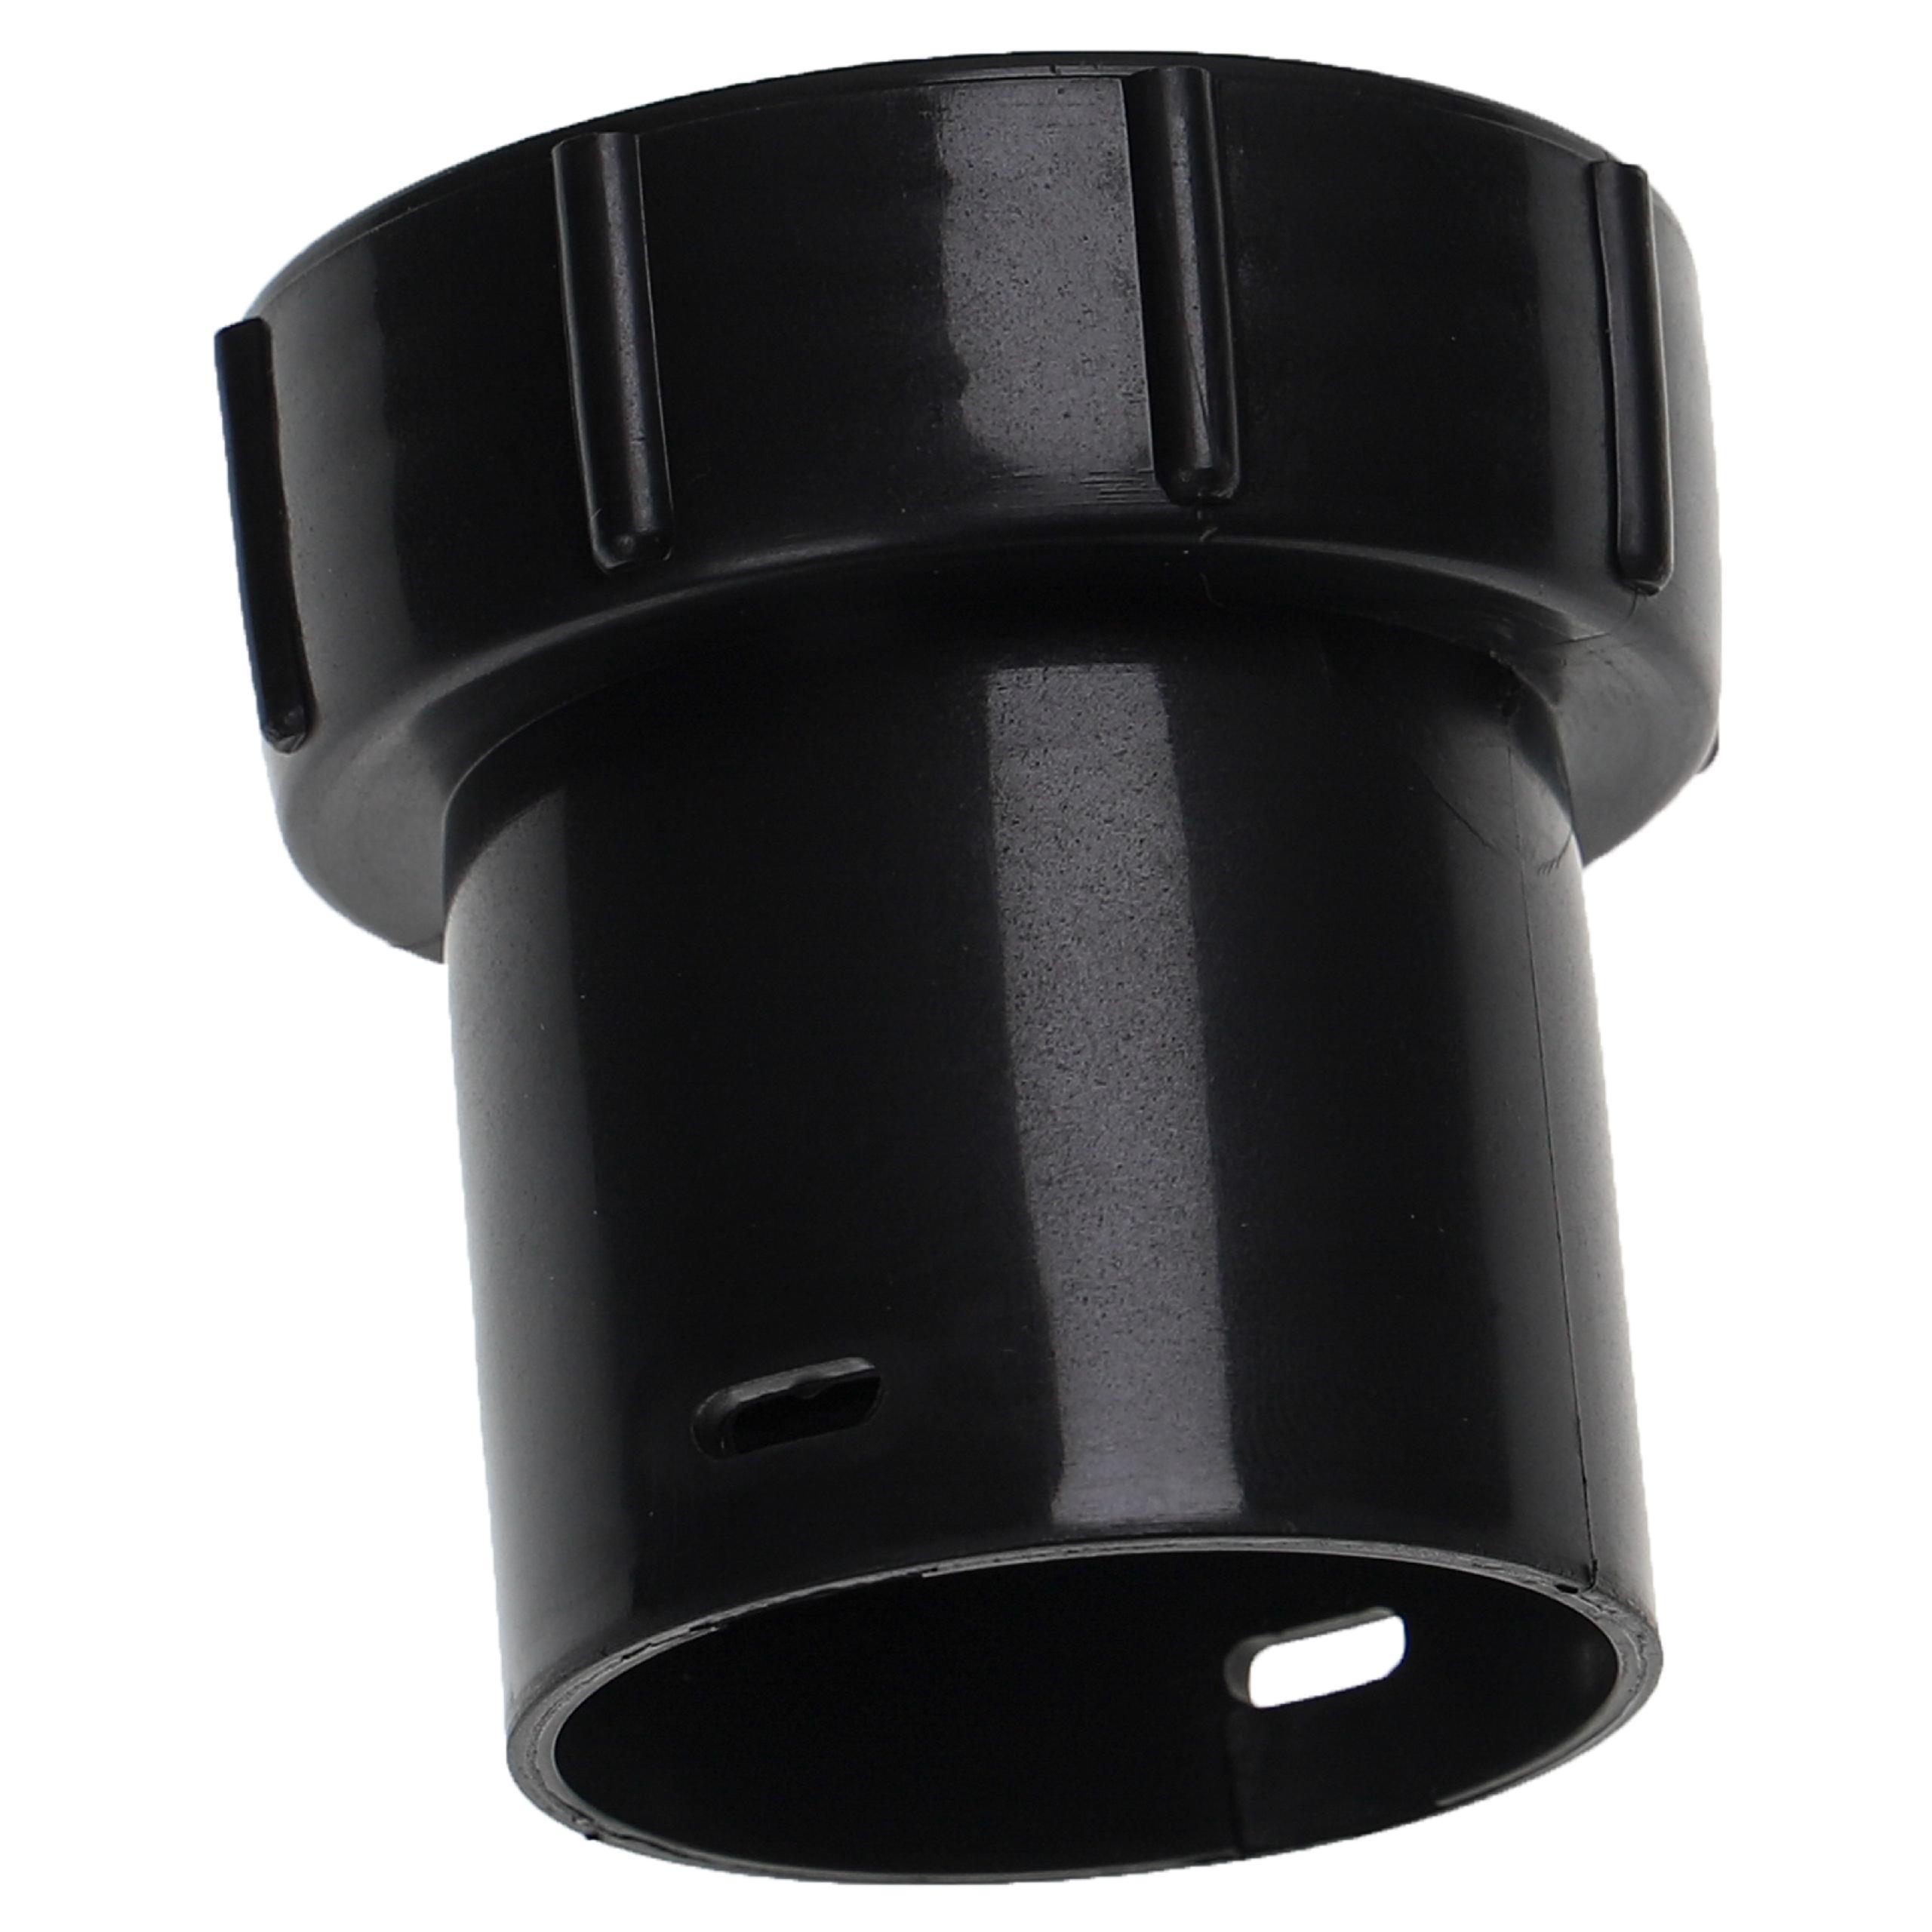 Adaptateur de tuyau pour aspirateur Numatic / Nilfisk Charles et autres - 32 mm rond, plastique